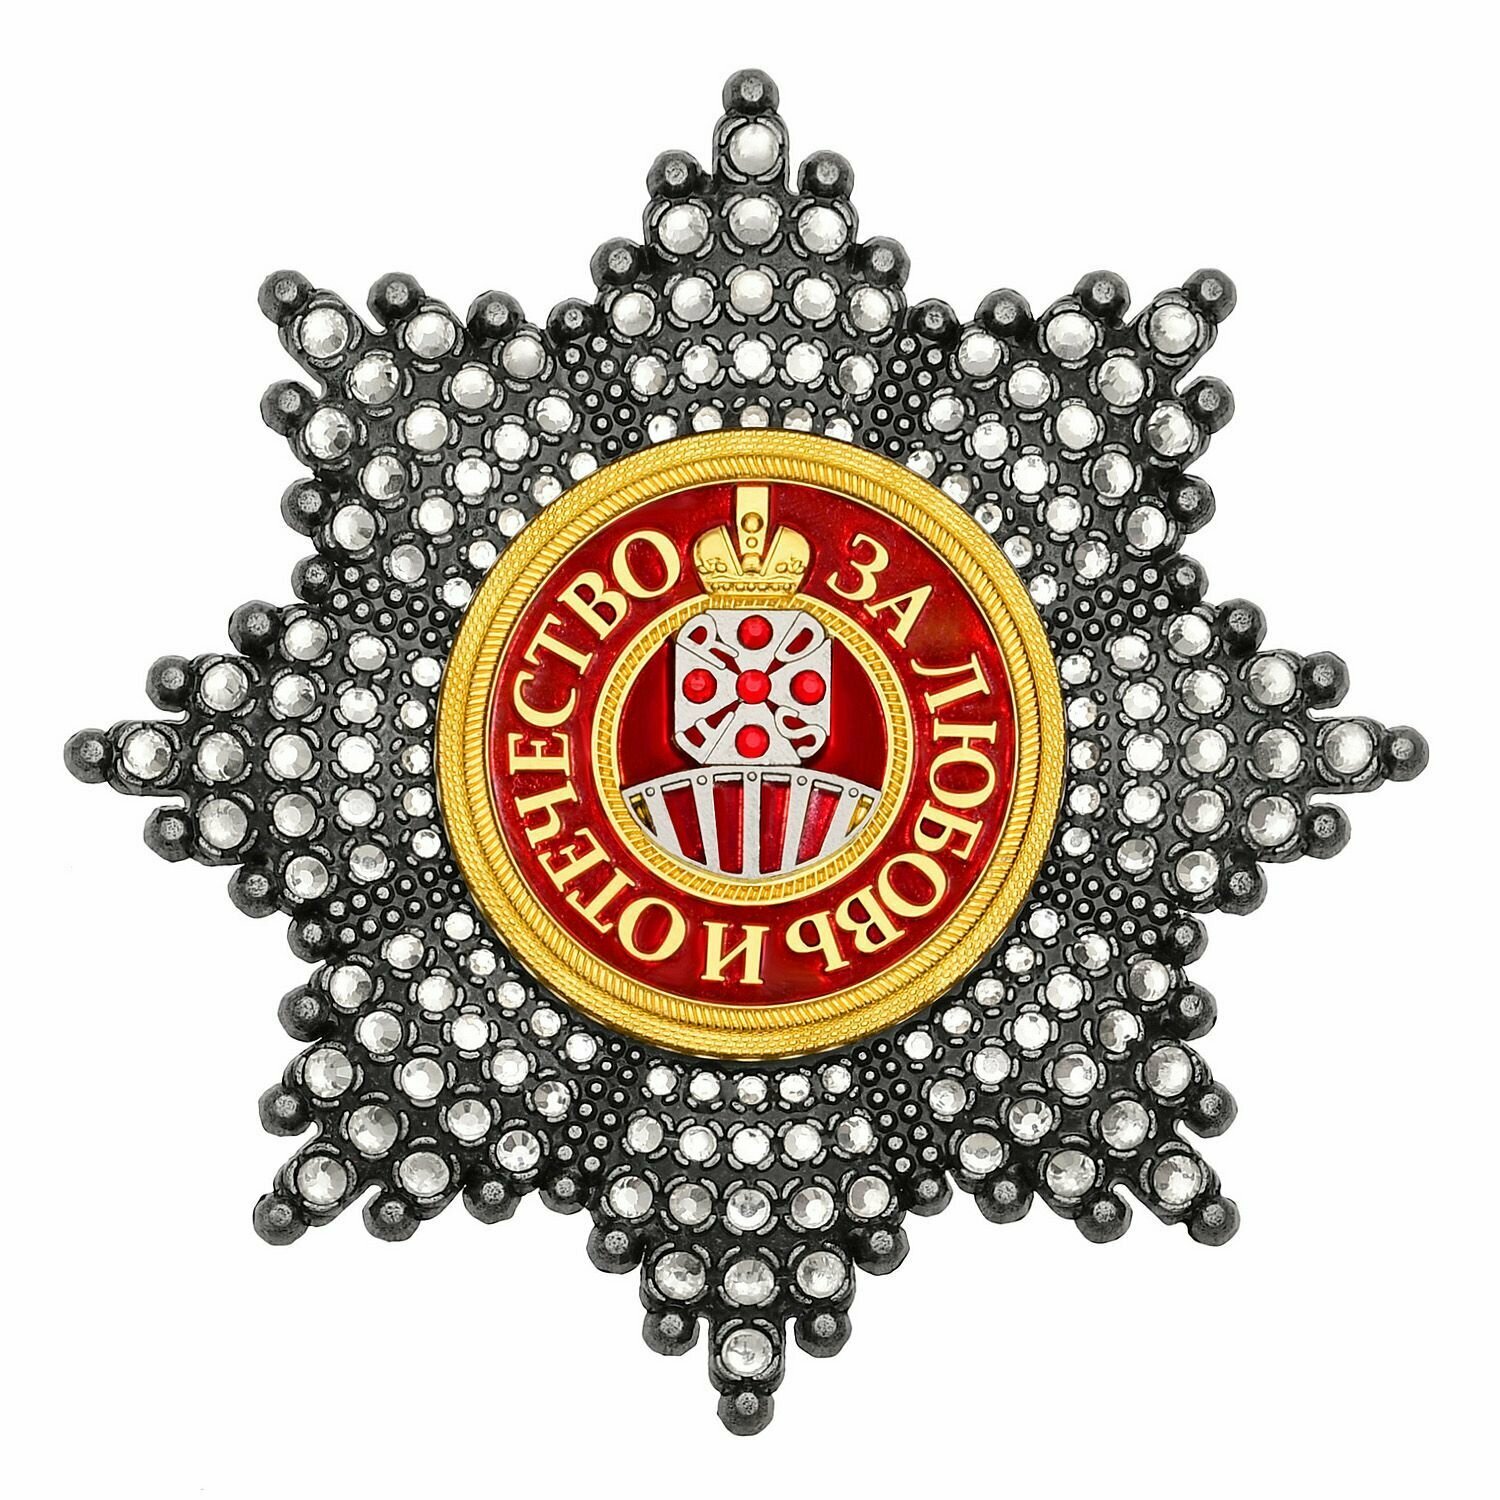 Звезда ордена Святой Екатерины со стразами, полноразмерный муляж Российской империи